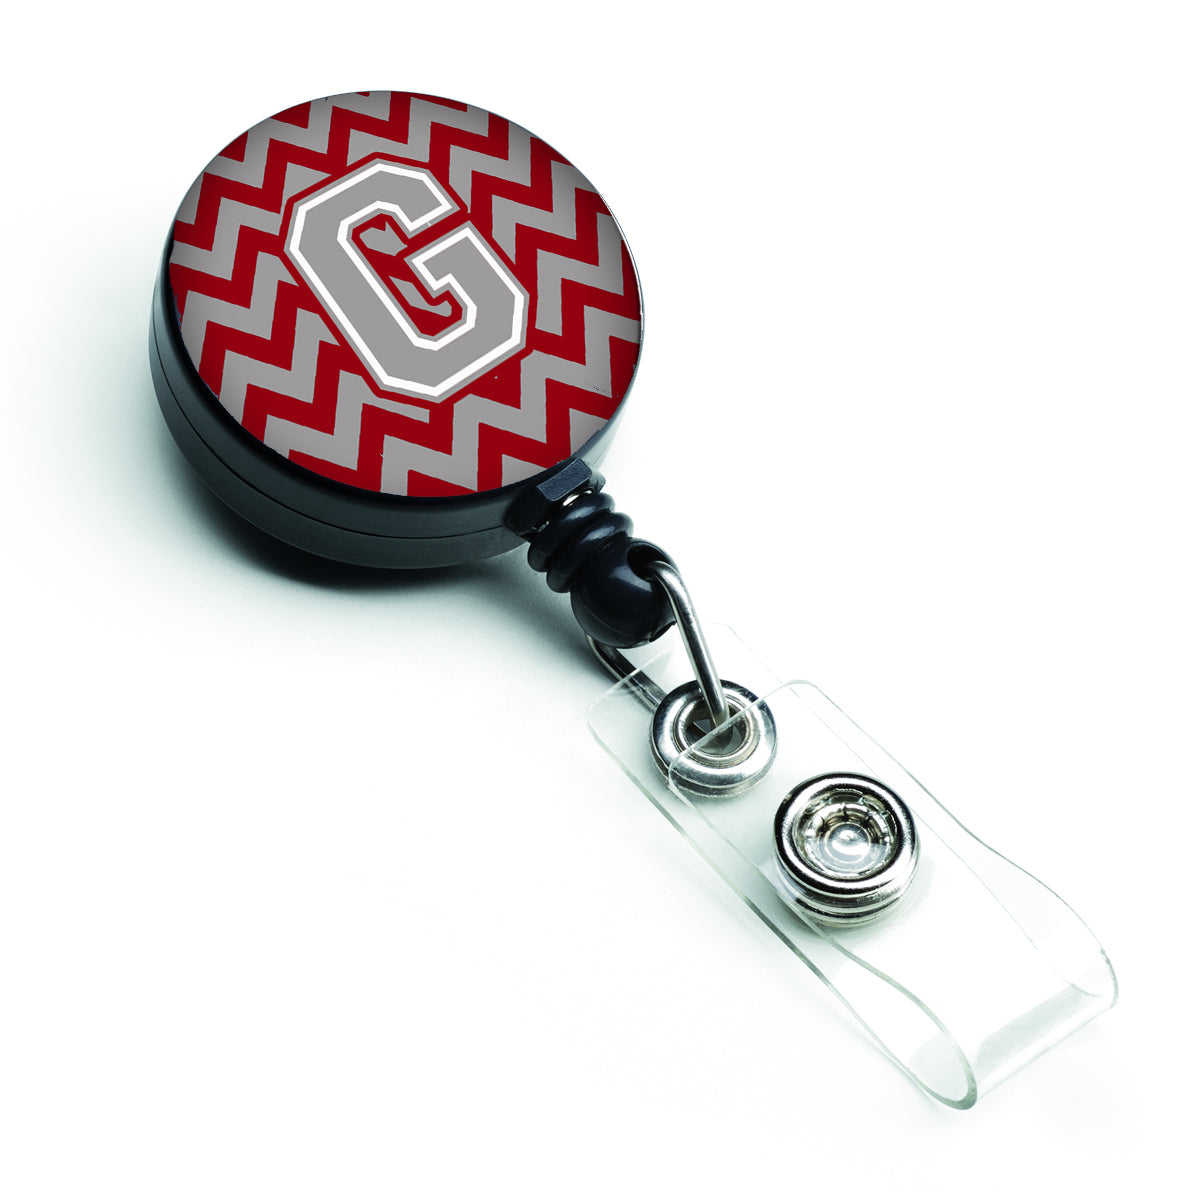 Bobine de badge rétractable lettre G Chevron cramoisi et gris CJ1043-GBR